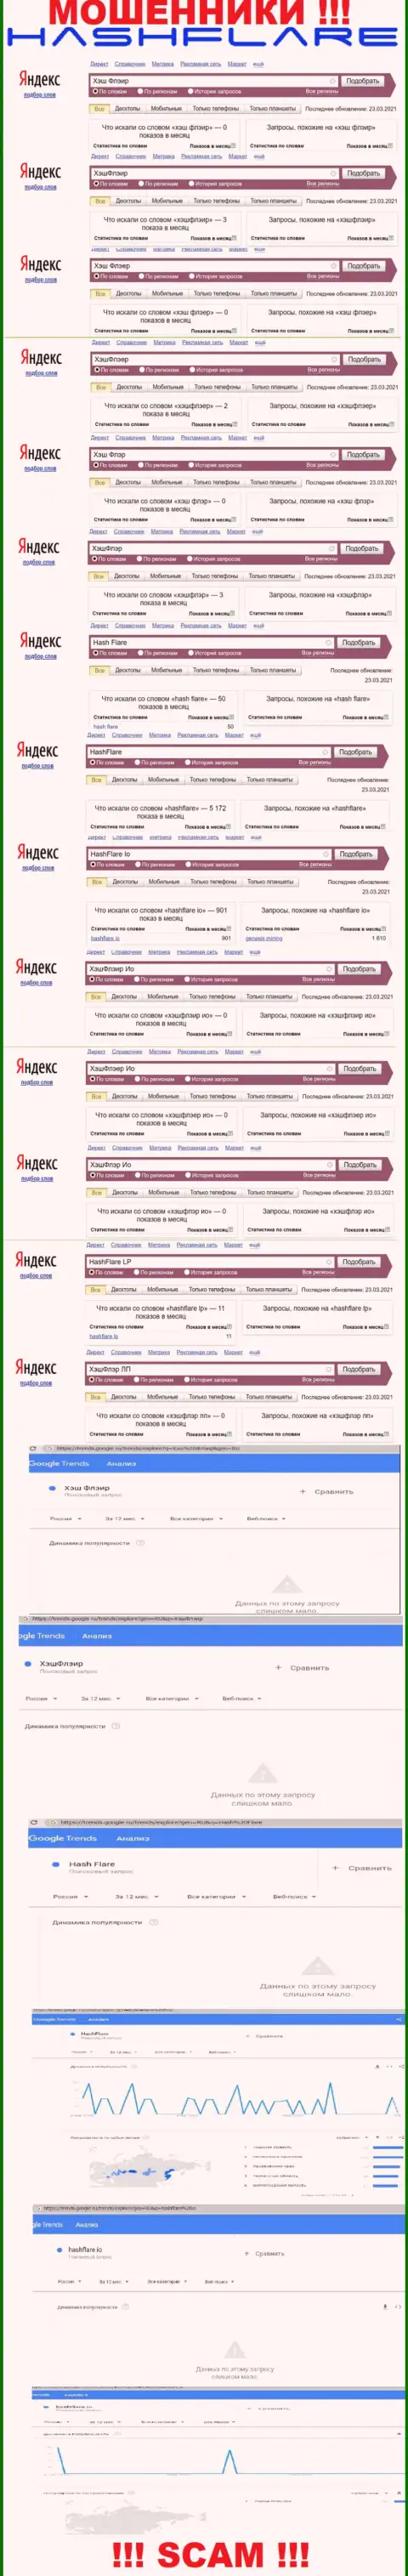 Количество online-запросов в поисковиках сети Интернет по бренду мошенников HashFlare